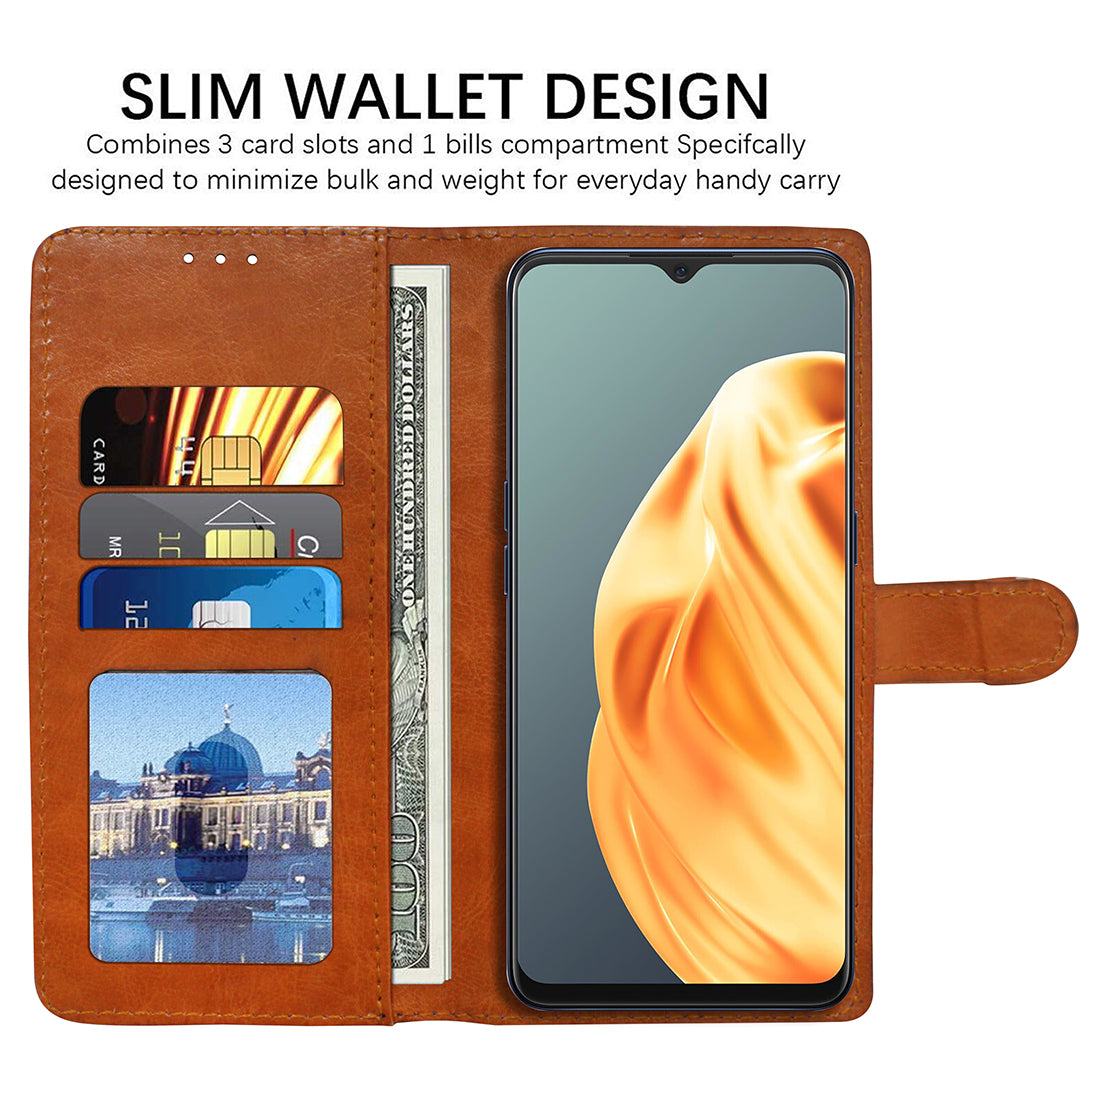 Premium Wallet Flip Cover for Oppo F15 / Oppo A91